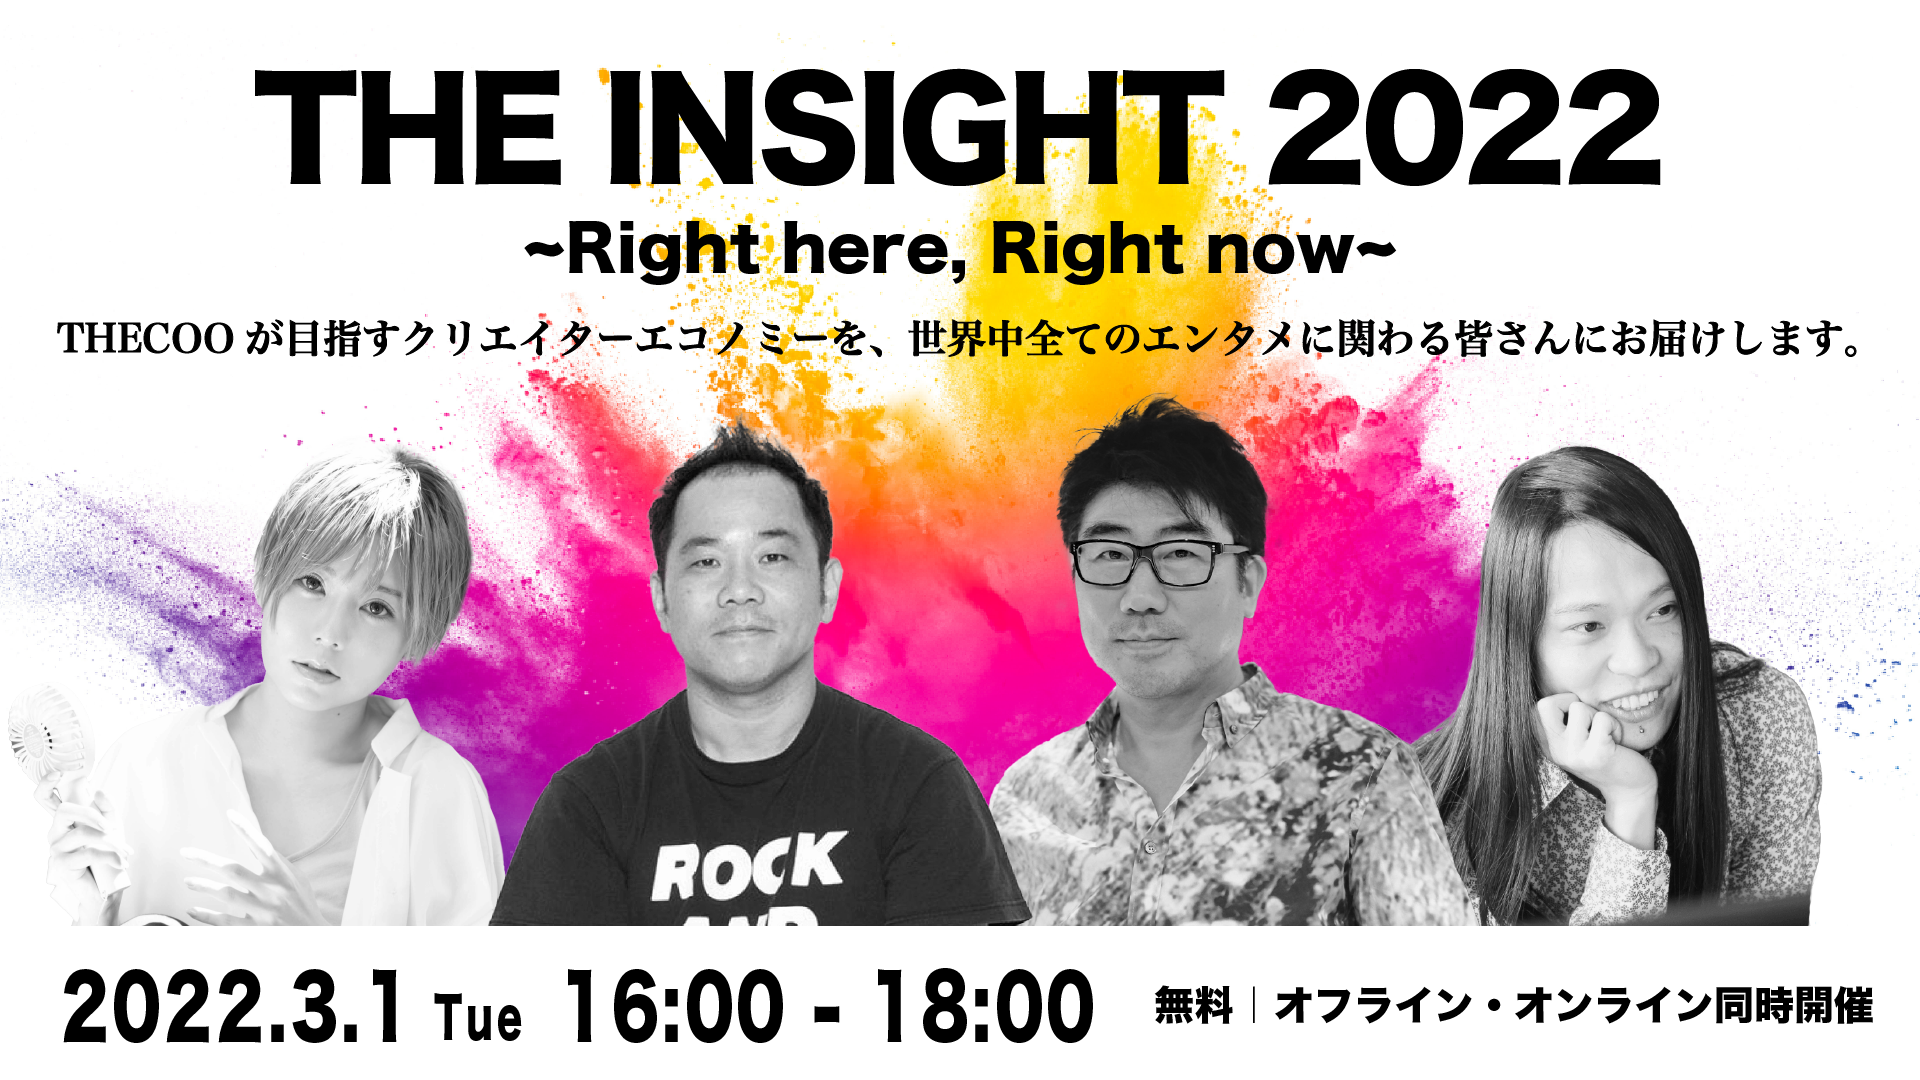 音楽プロデューサー 亀田誠治氏,アーティスト 雫氏の登壇が決定 「The Insight 2022 ~Right here, Right now~」ゲスト登壇者とプログラムの詳細を発表！